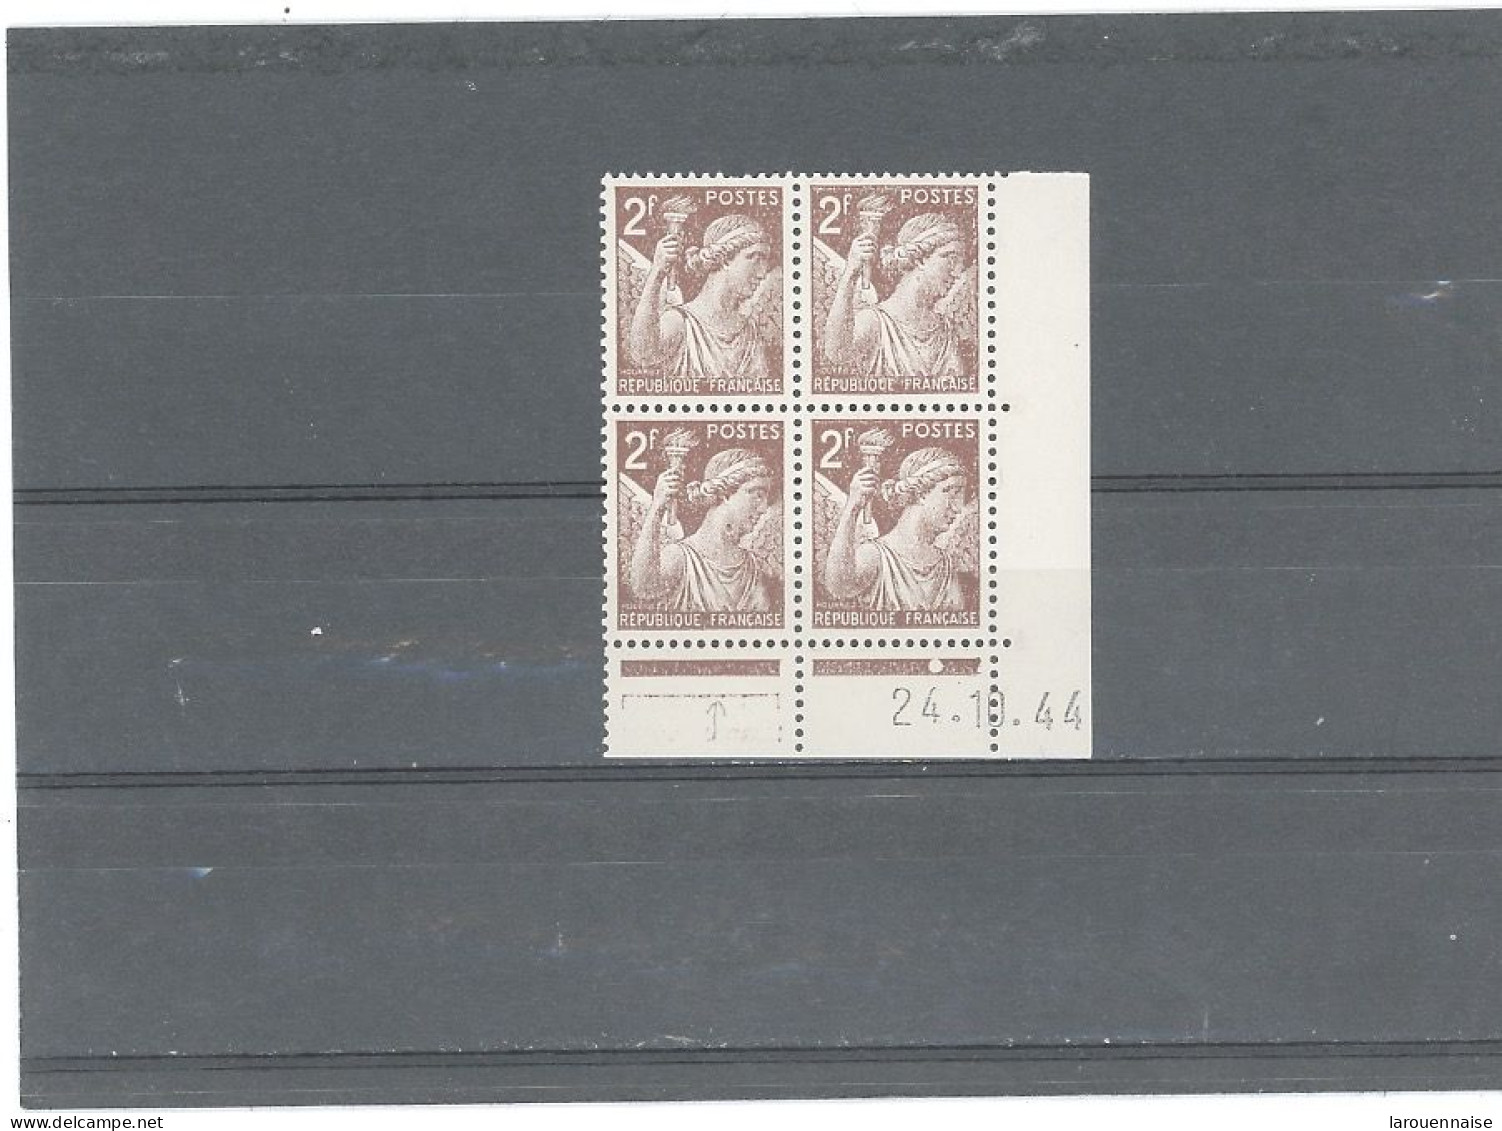 VARIÉTÉ-N°653 -IRIS 2F BRUN -ANNEAU LUNE (Cérès 653m) DANS BLOC DE 4 ( CASE 3) COIN DATÉ 24-10-44 - Unused Stamps